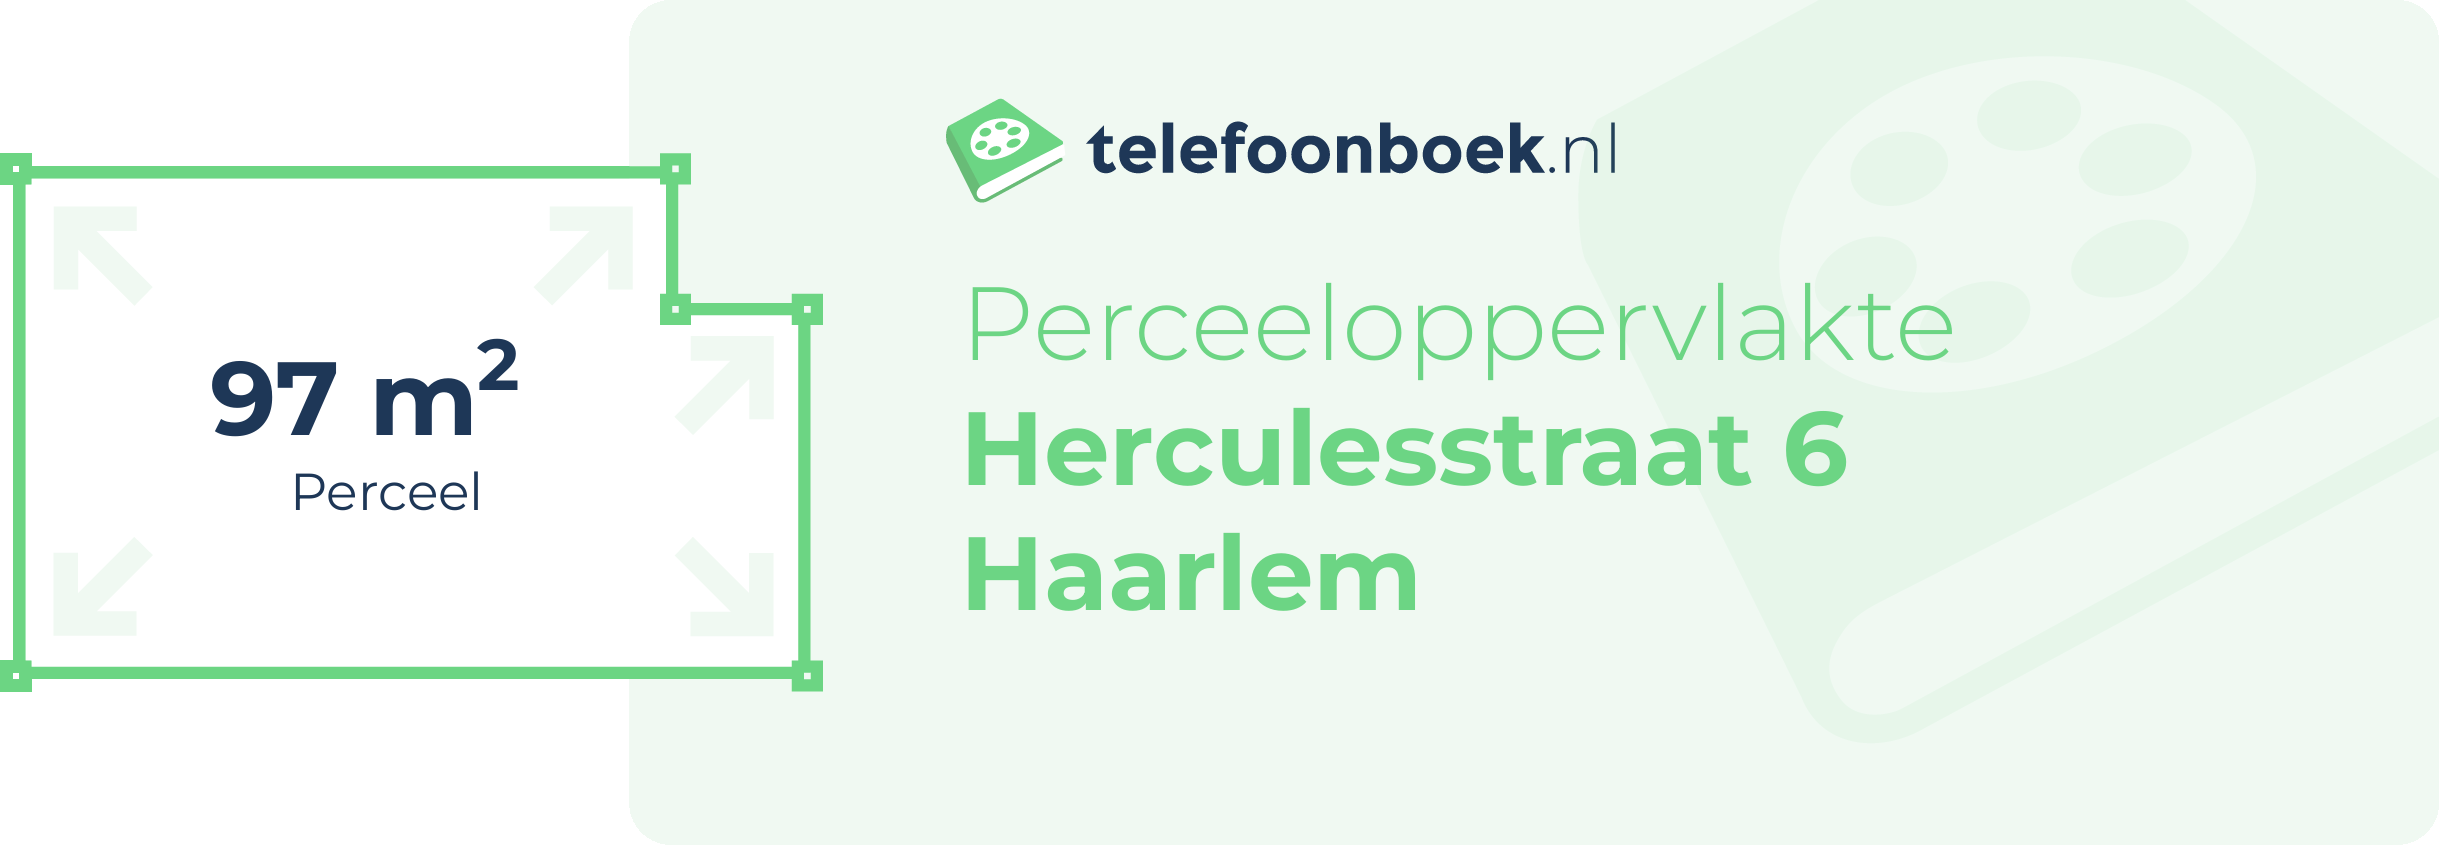 Perceeloppervlakte Herculesstraat 6 Haarlem